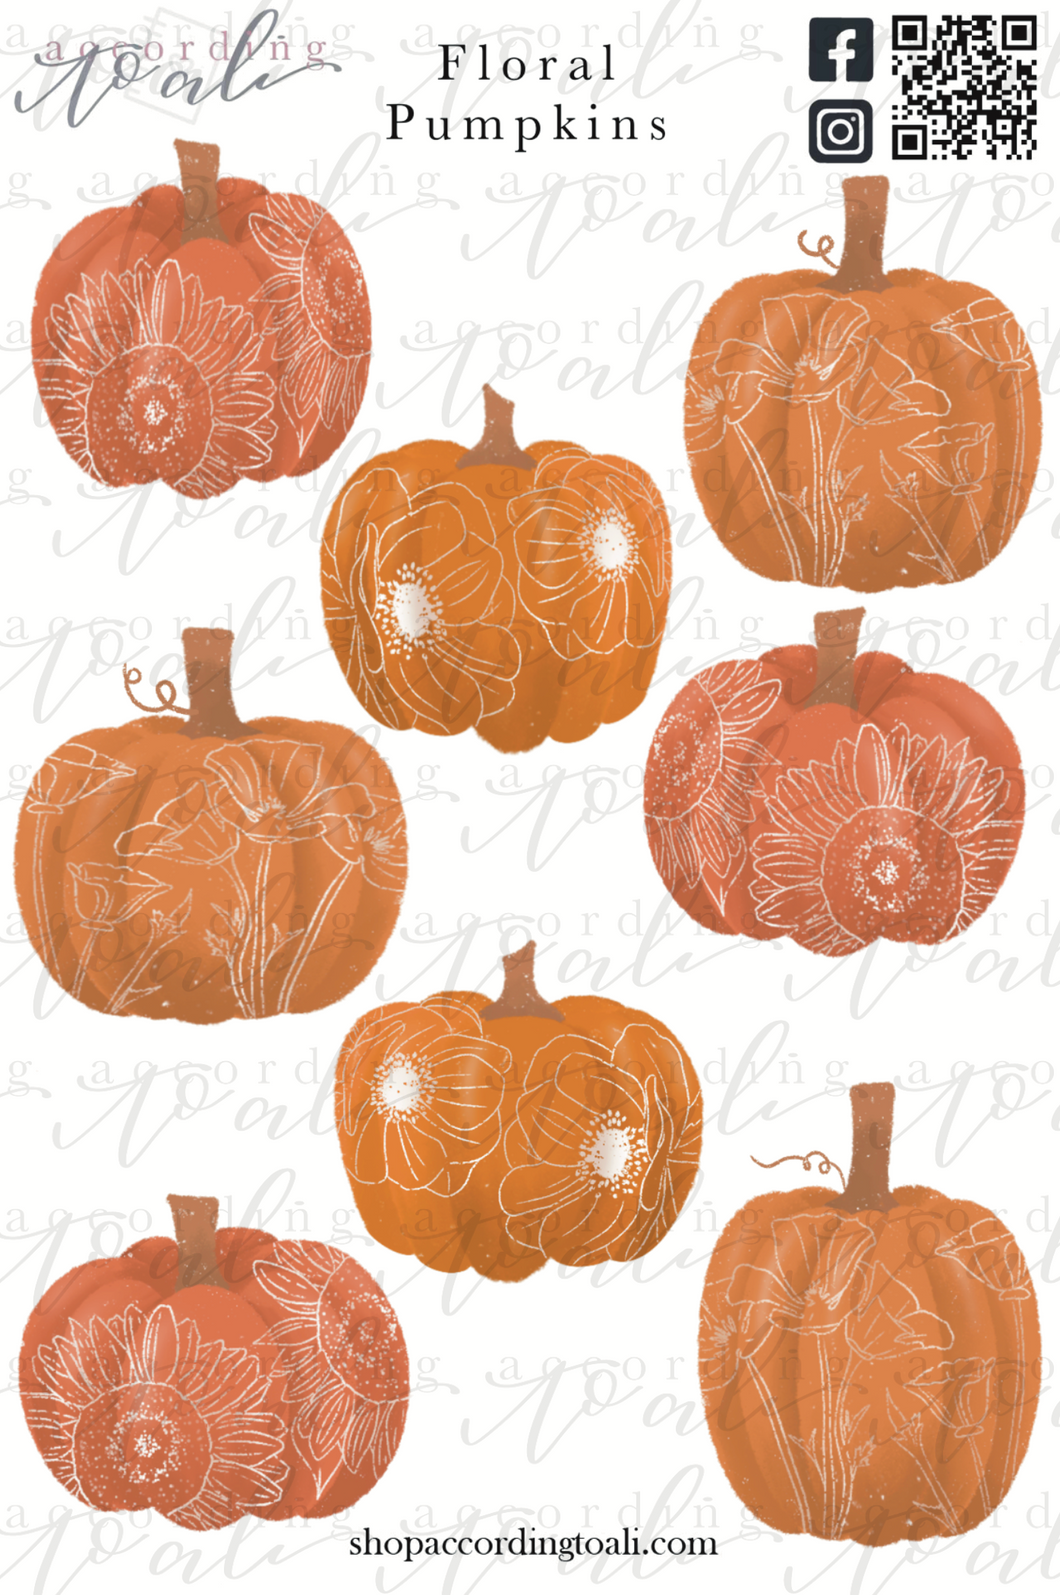 Floral Pumpkins Sticker Sheet